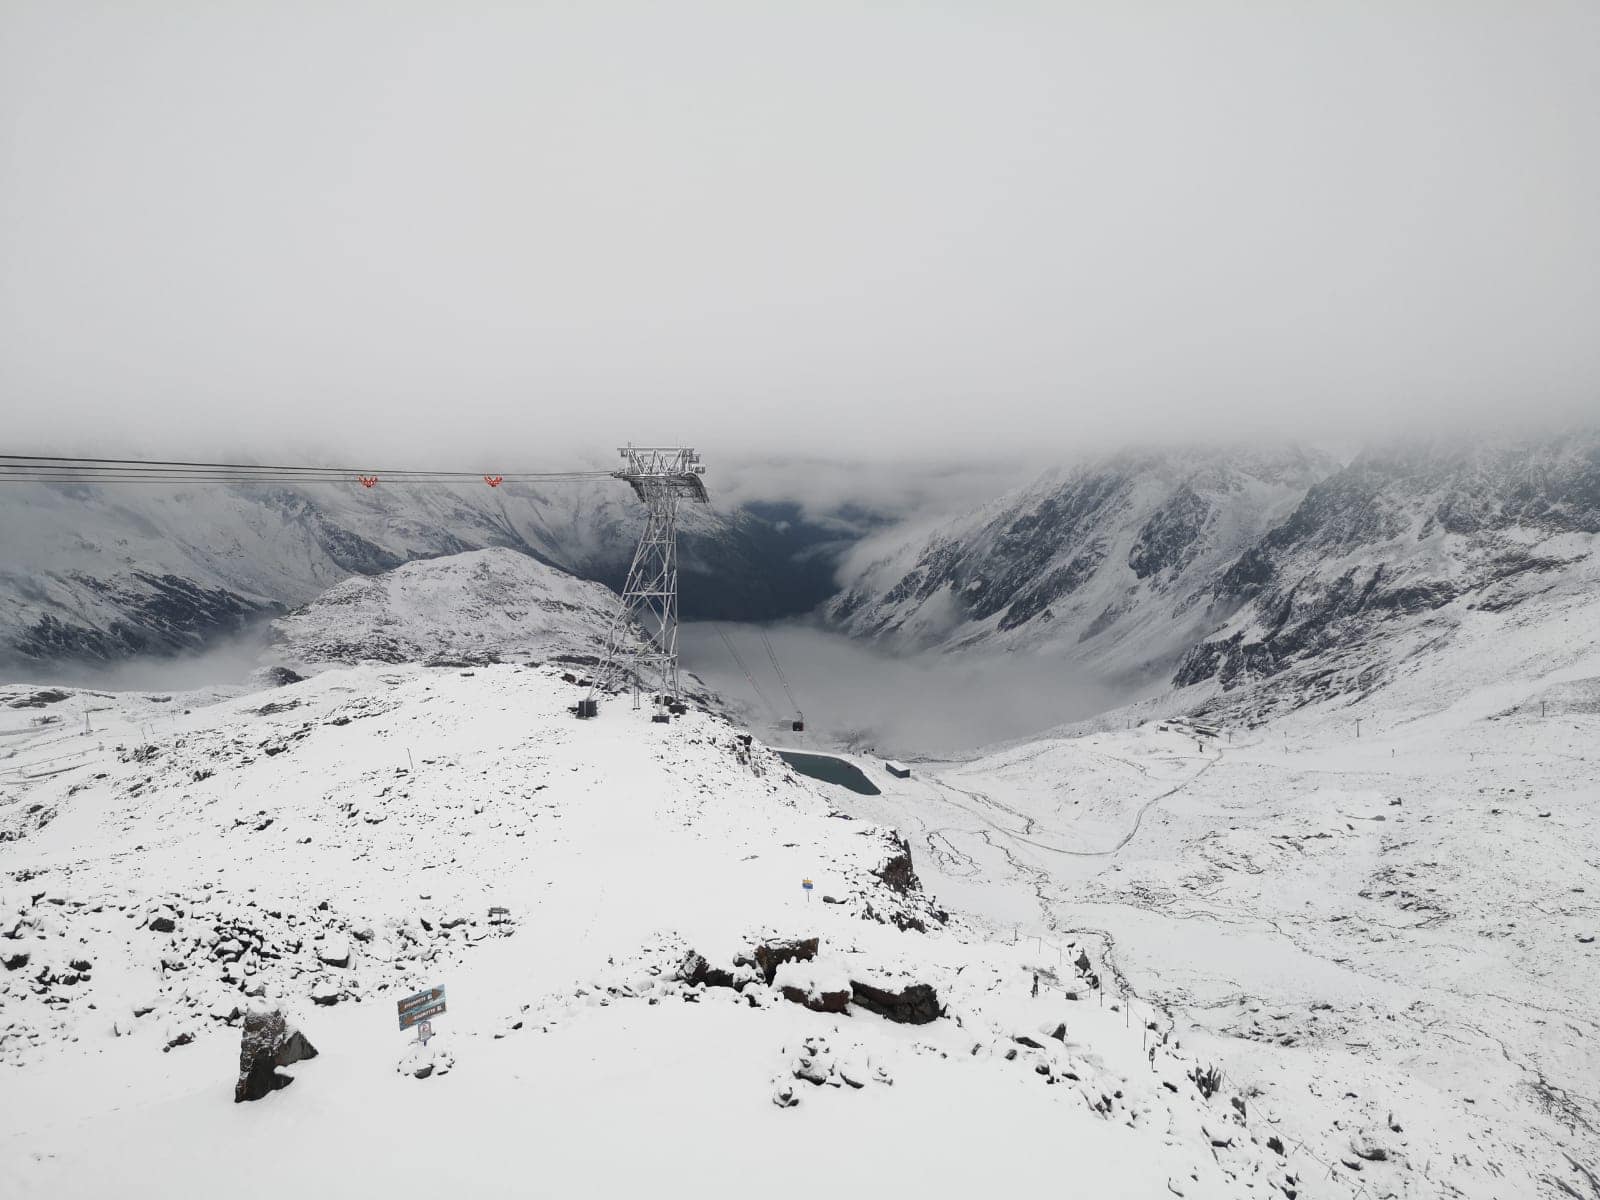 10cm reported at the Stubai Glacier